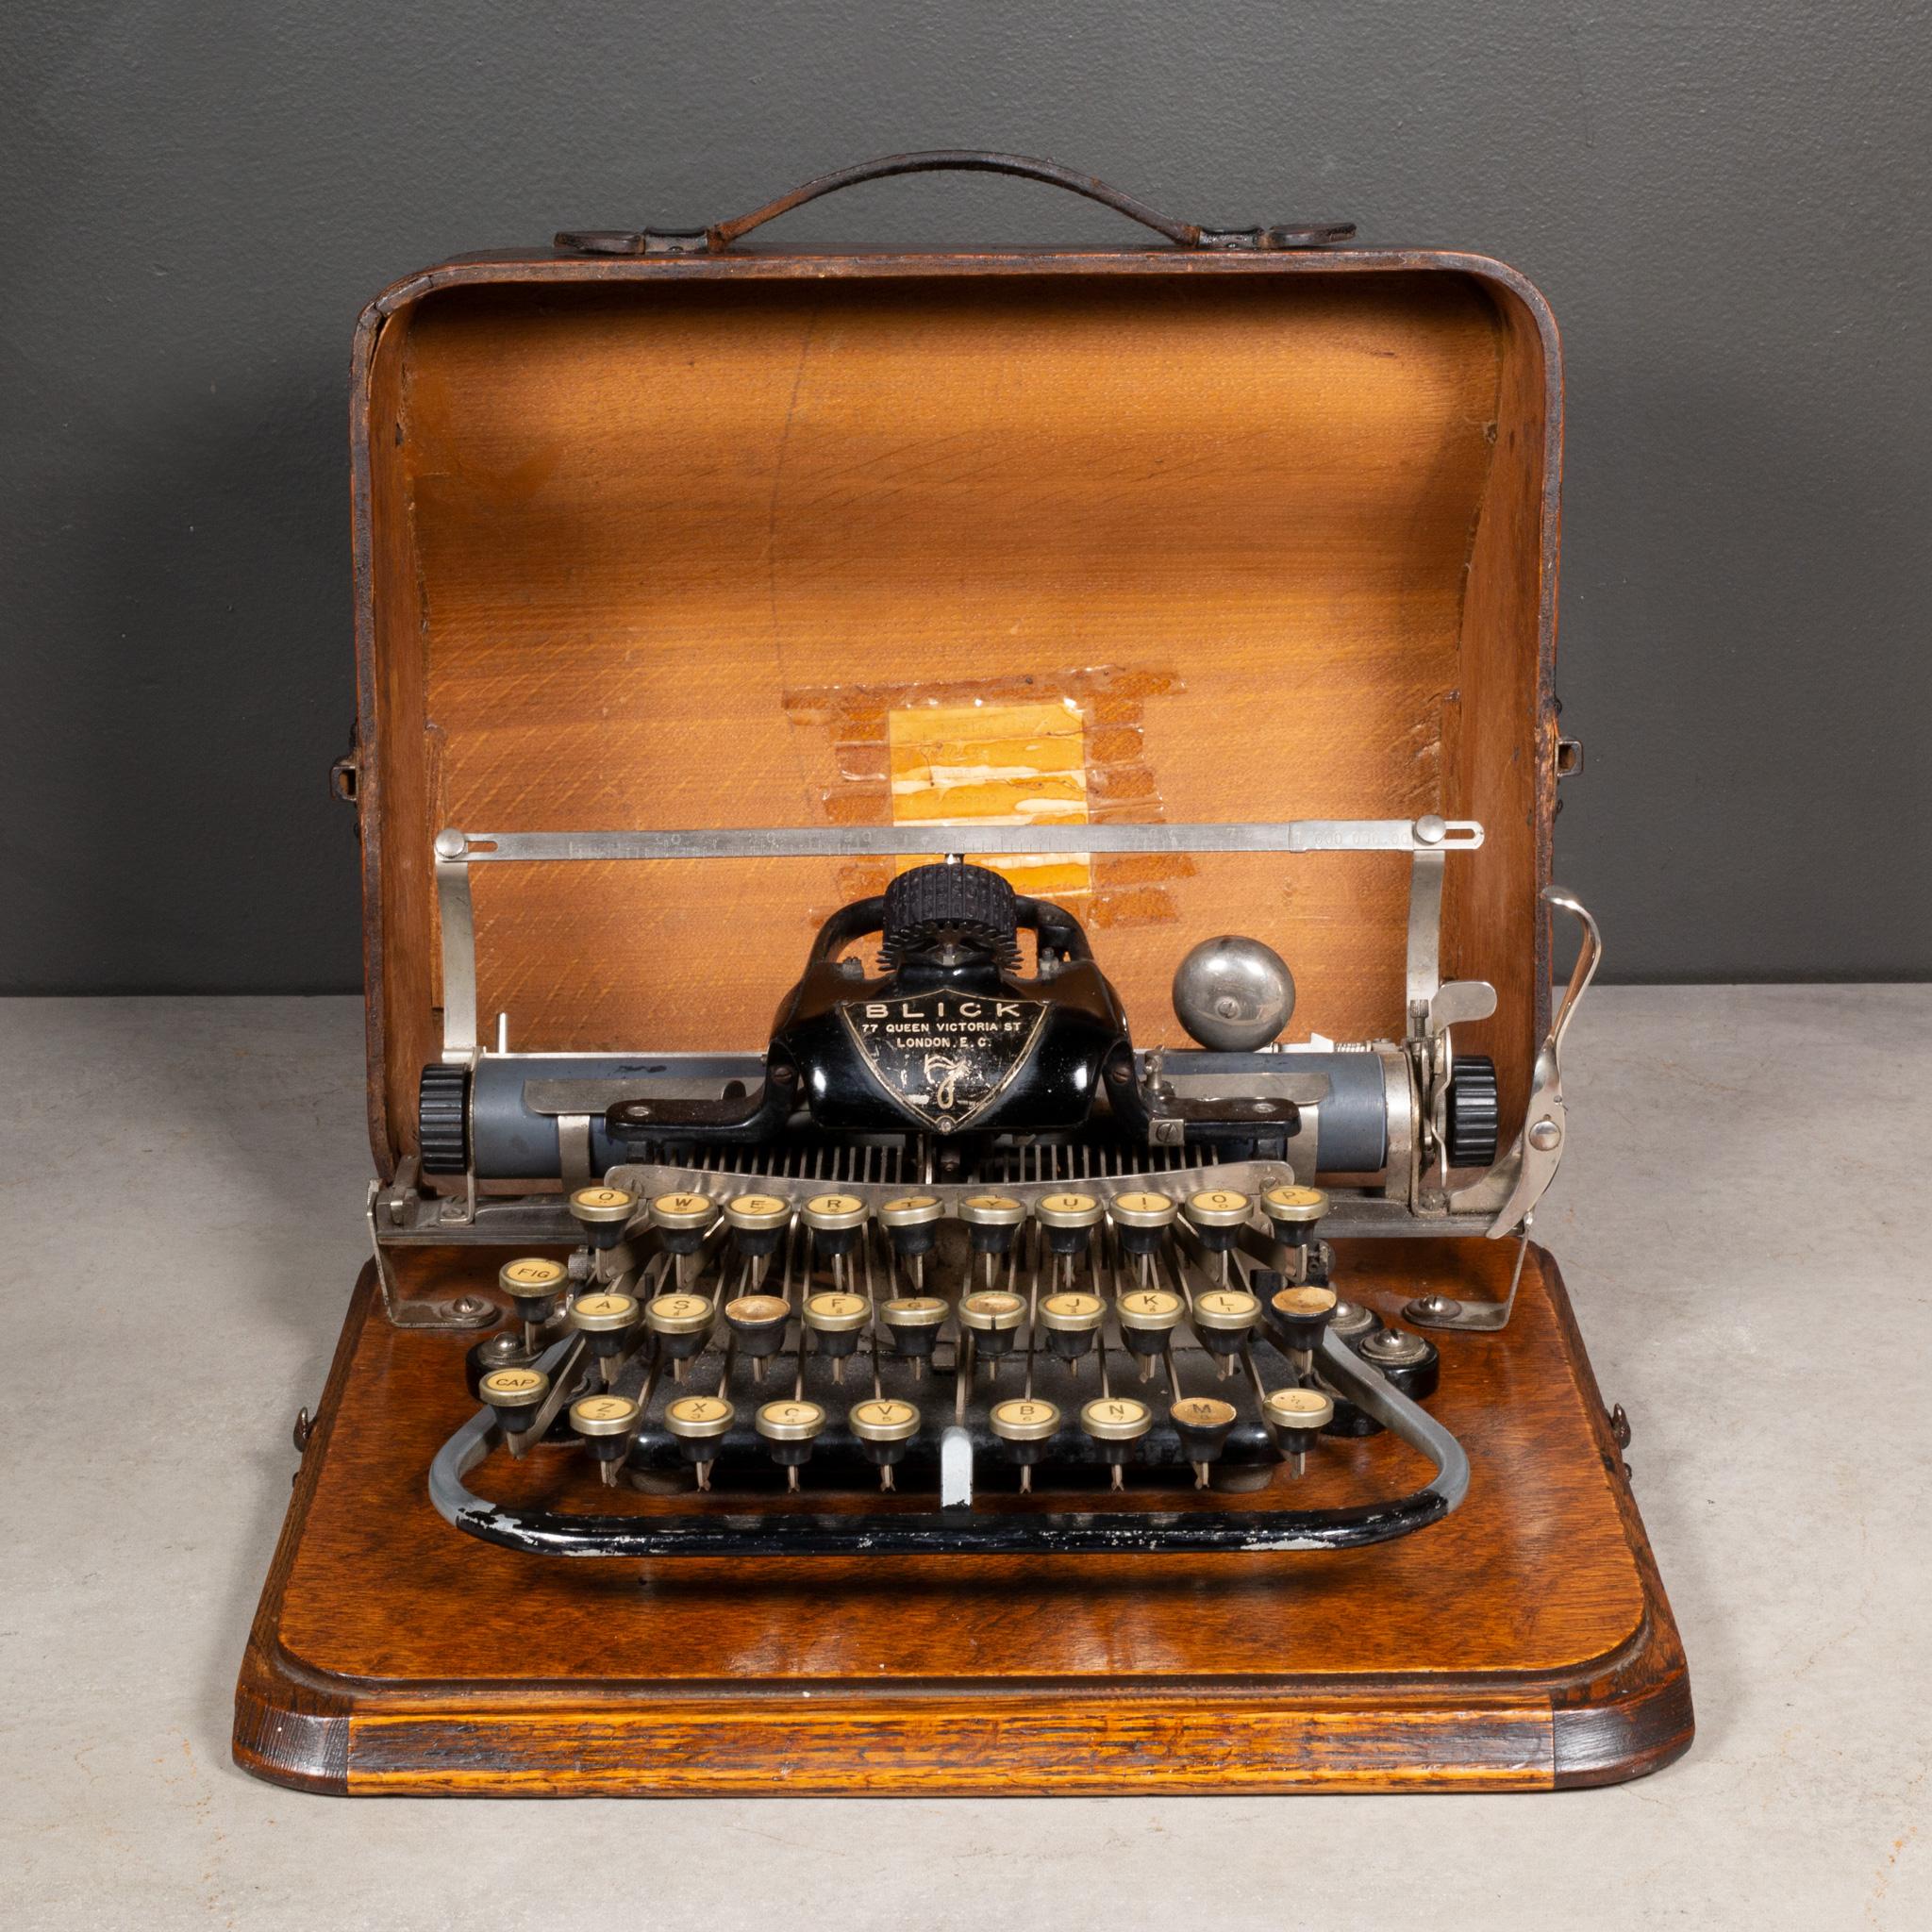 ÜBER

Ende 19. Jh. Blick Schreibmaschine #7 mit originalem Holzkasten und auf einem Holzsockel montiert. Das Modell Nummer 7 wurde von 1897 bis 1916 von der Blickensderfer Typewriter Company mit Sitz in Stamford, Connecticut, USA, hergestellt.